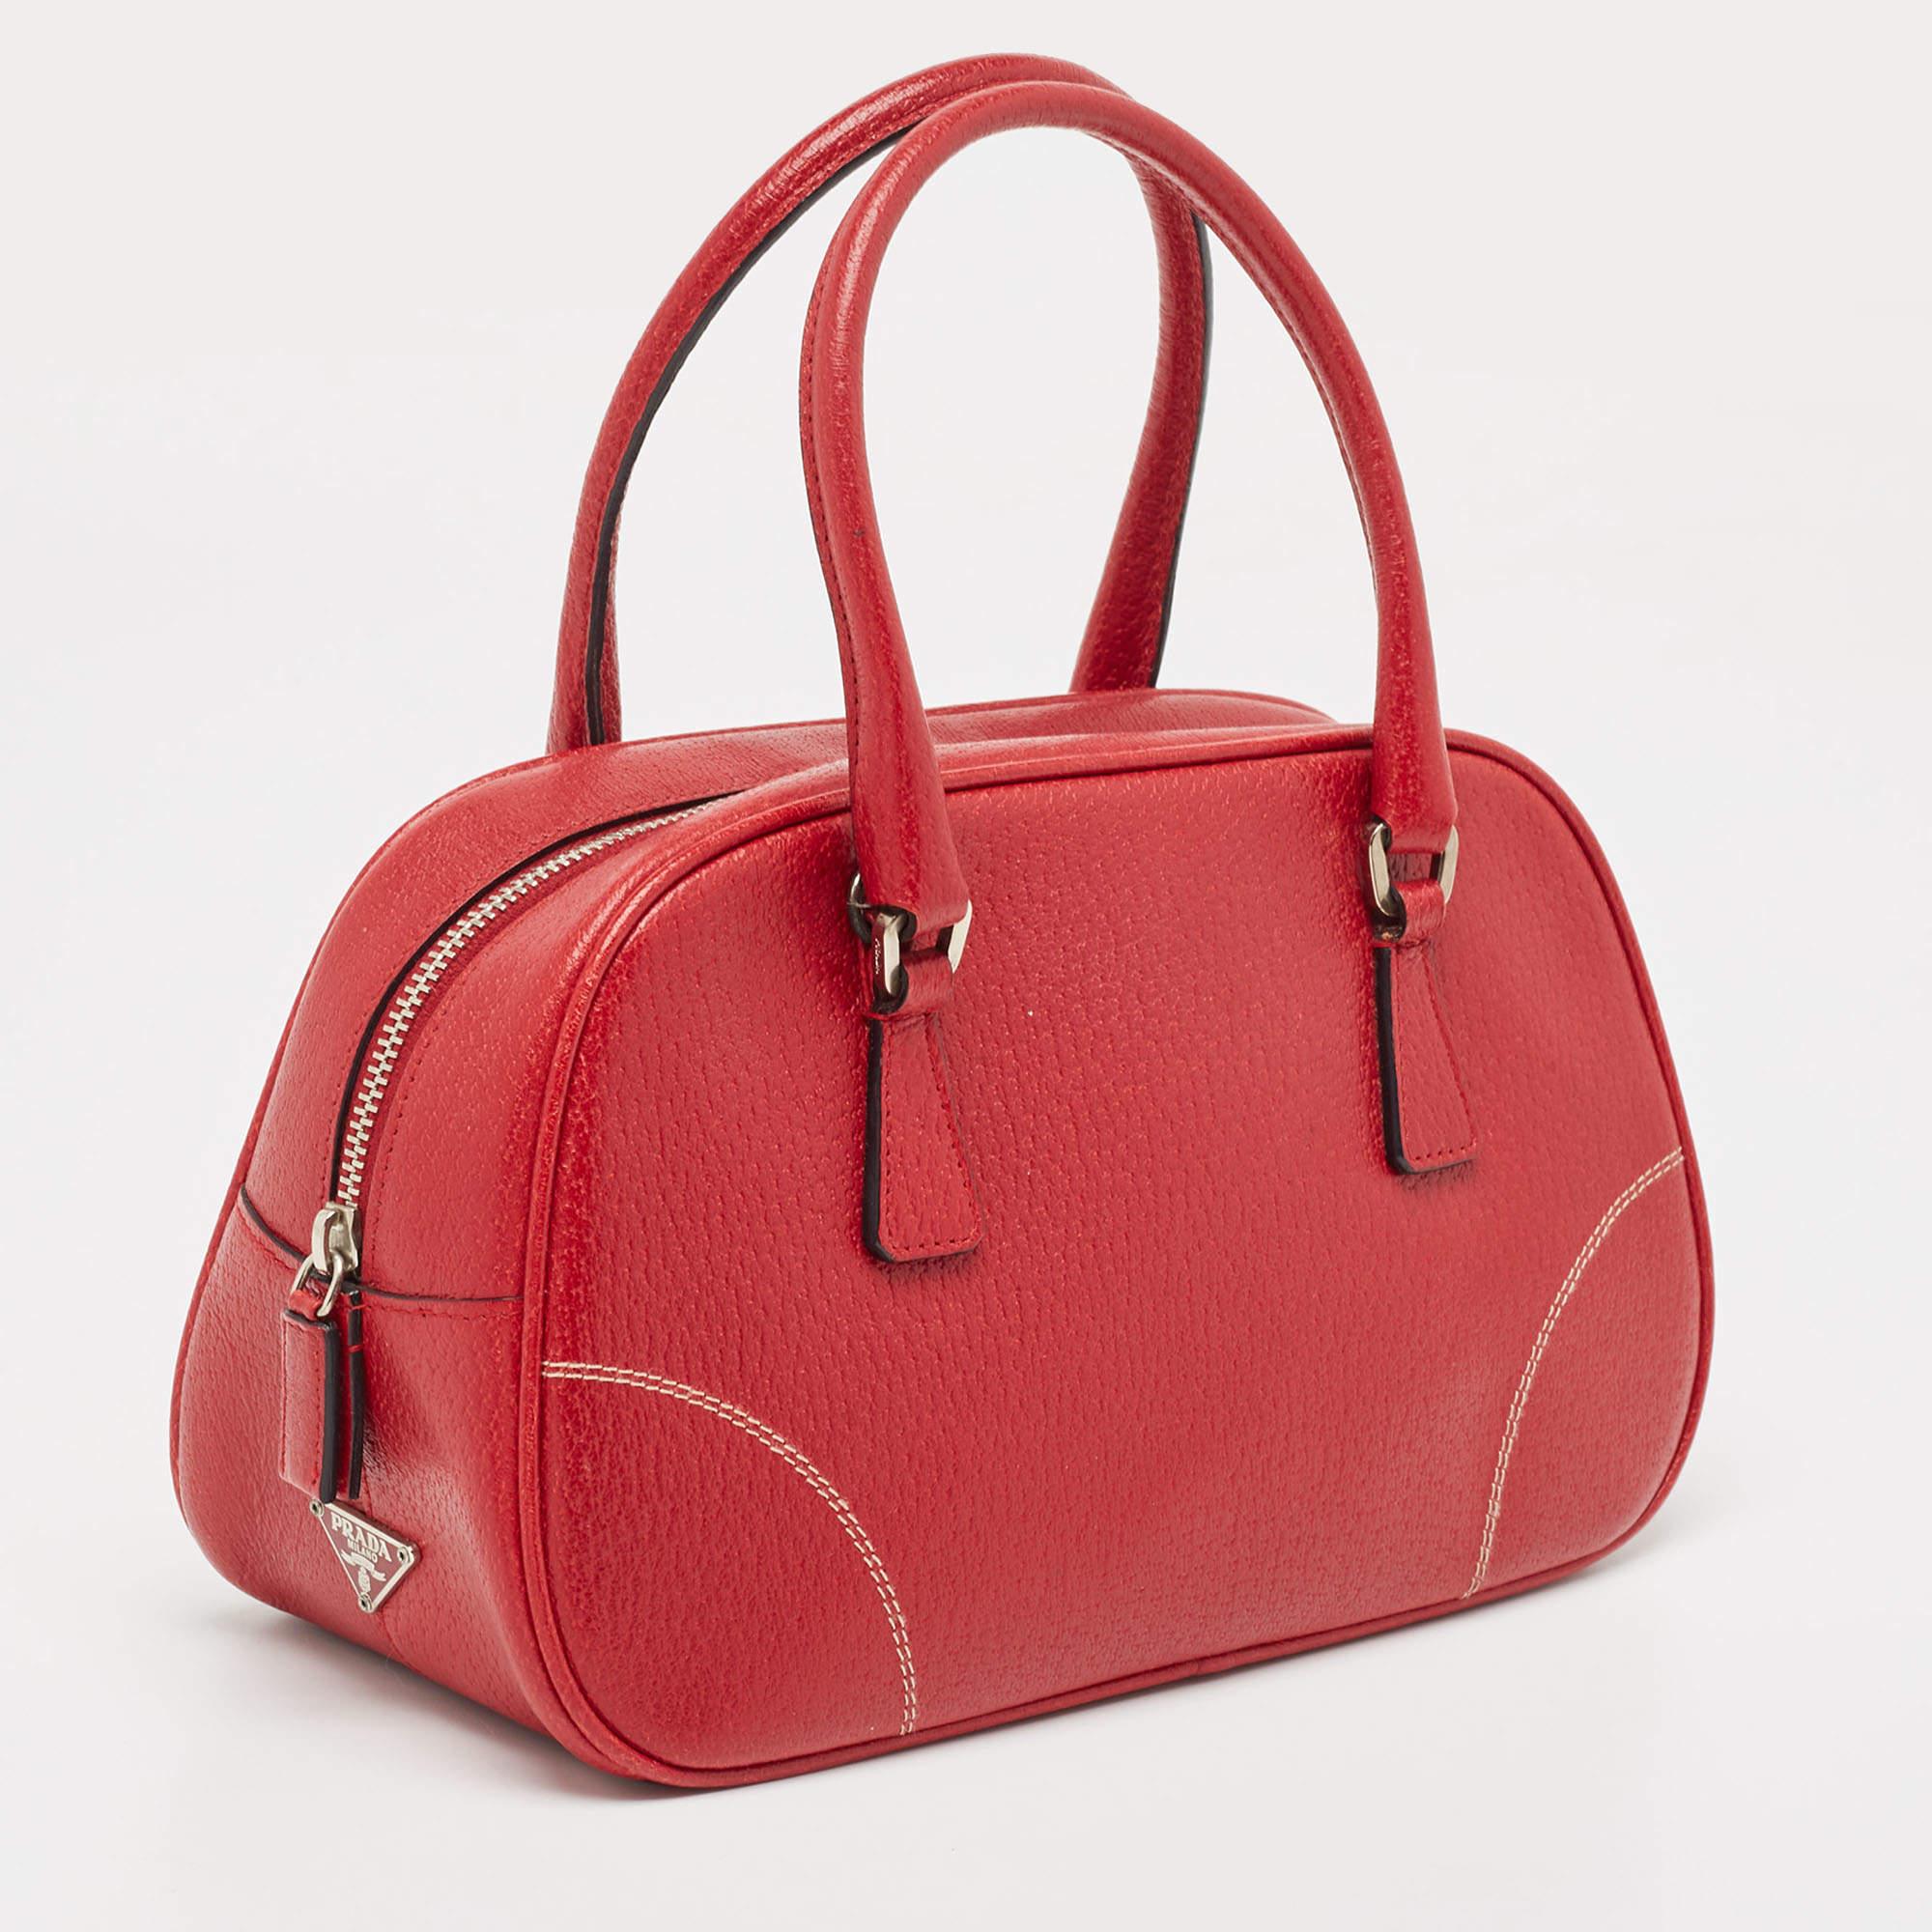 Prada Red Leather Mini Bowler Bag In Good Condition For Sale In Dubai, Al Qouz 2